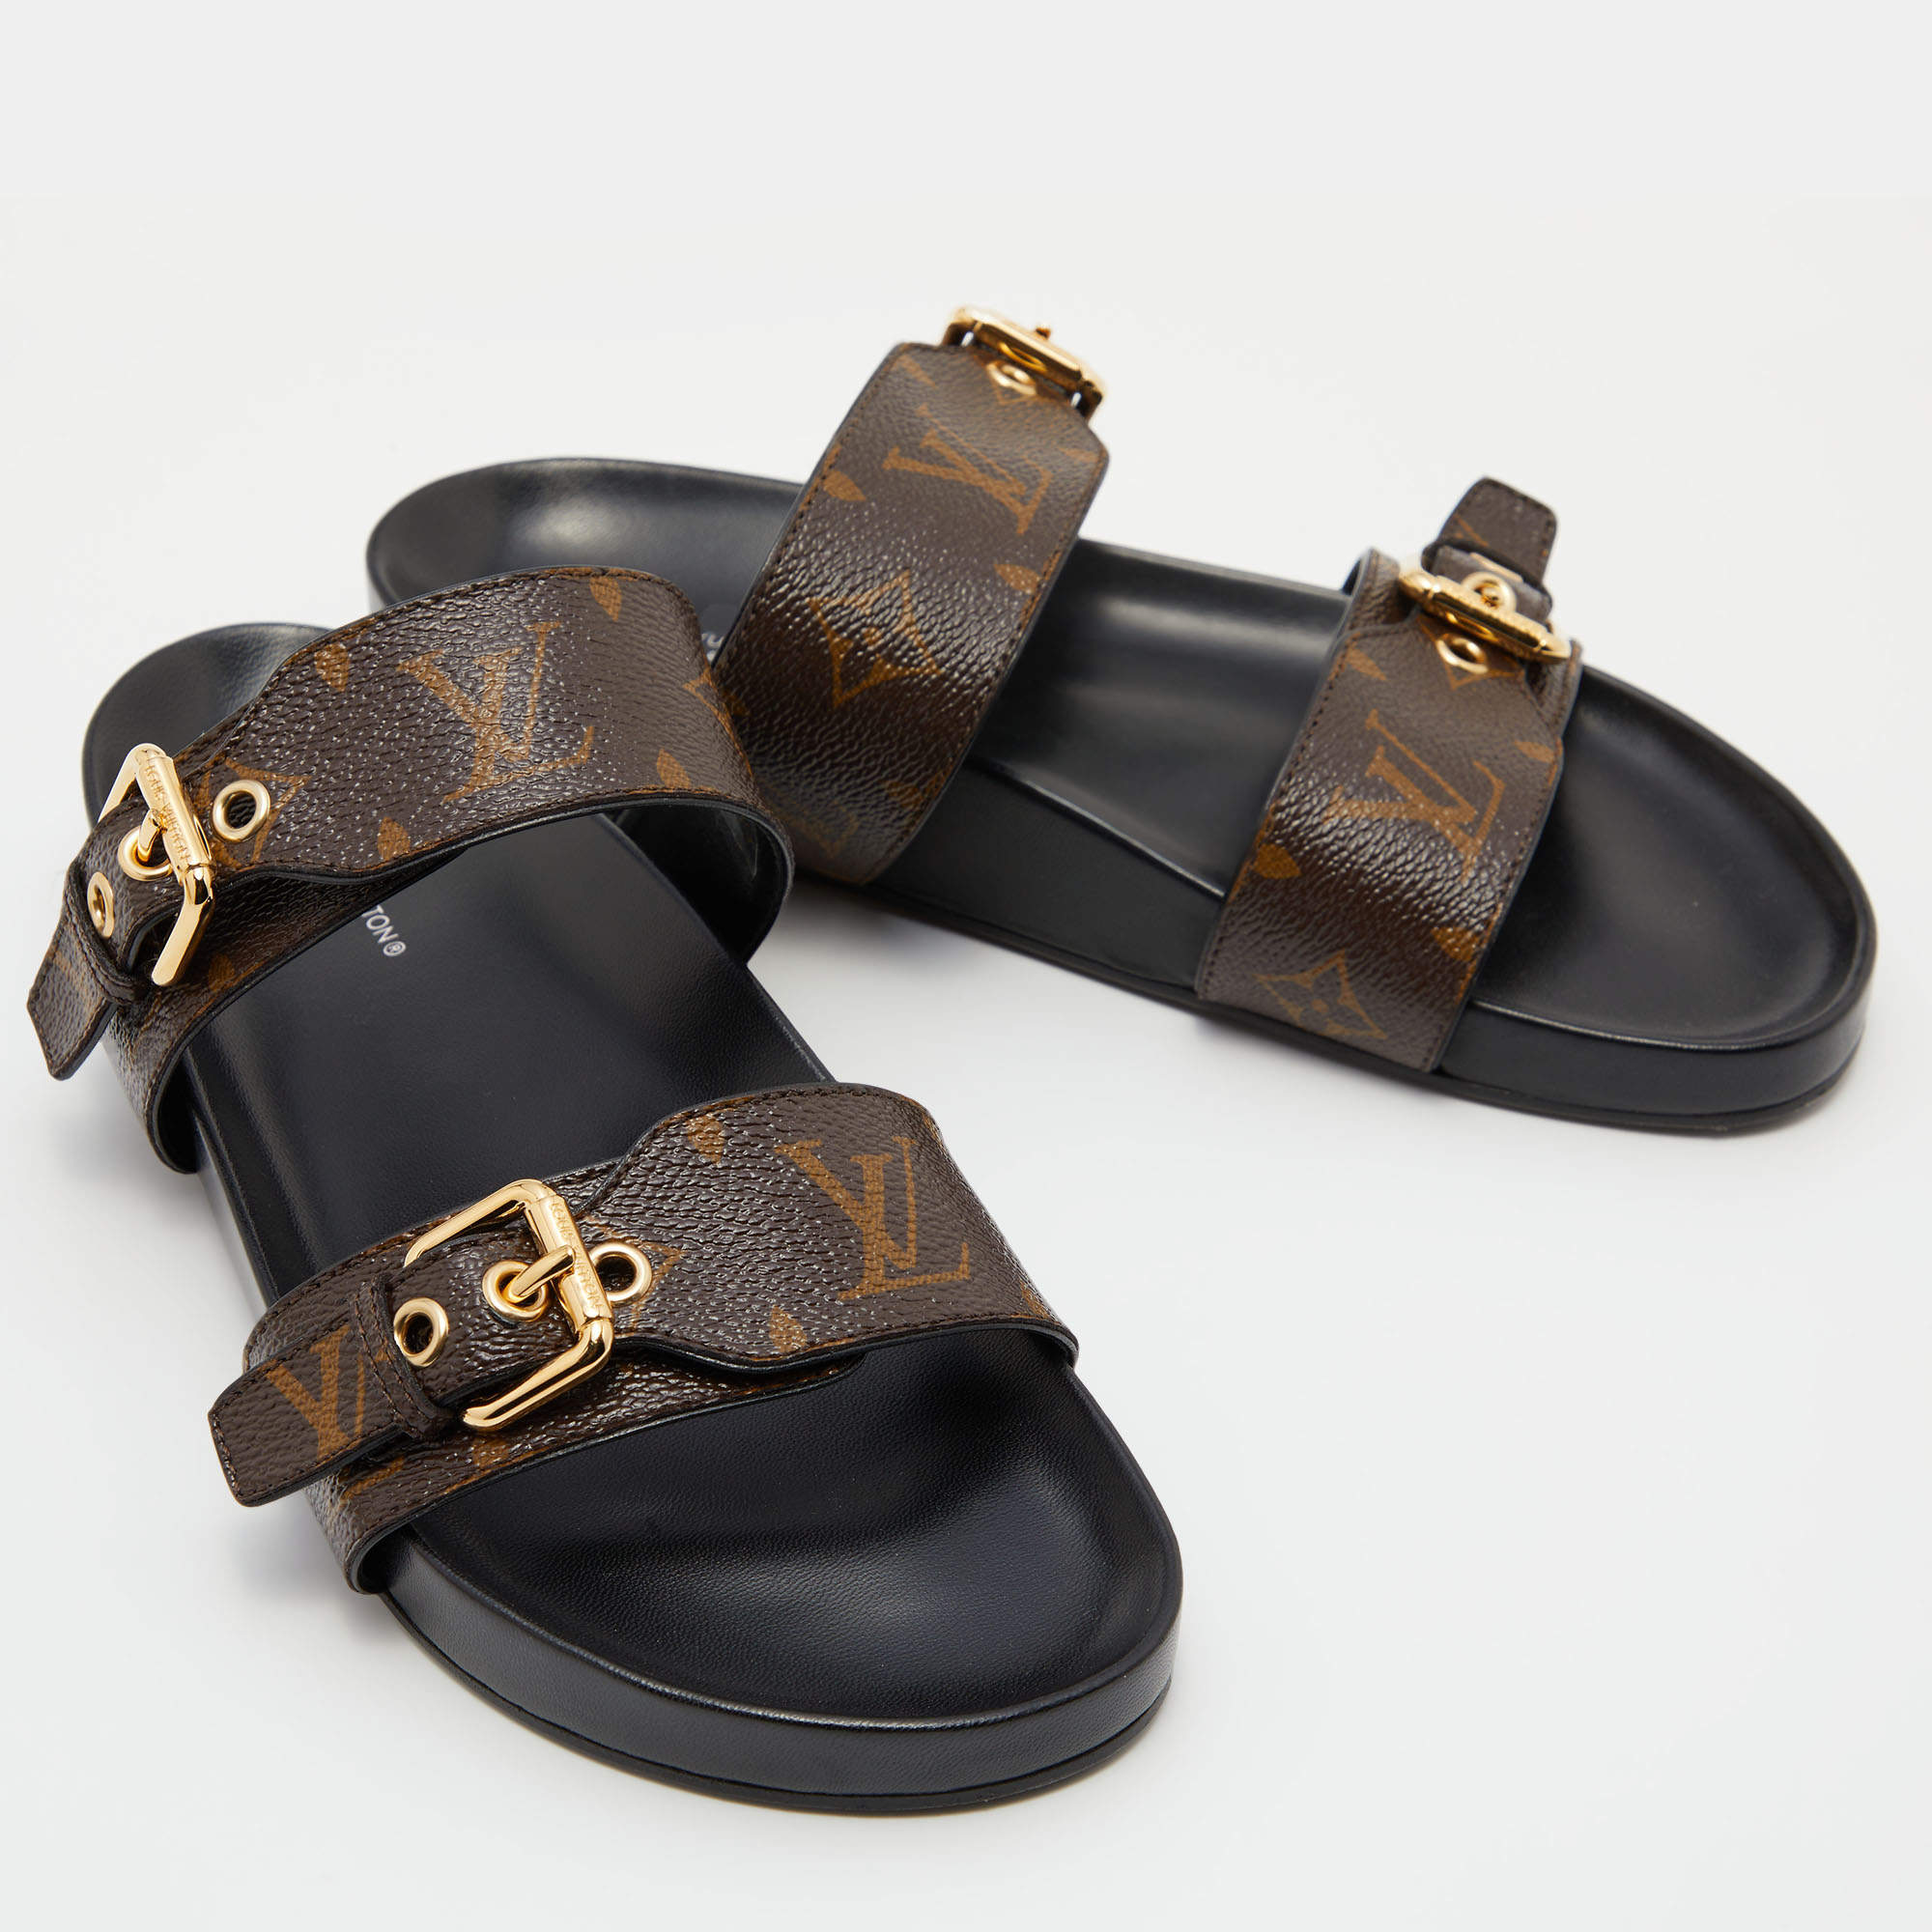 Louis+Vuitton+BOM+Dia+Flat+Mule+Monogram+Two+Buckle+Sandals+EU+Size+39 for  sale online